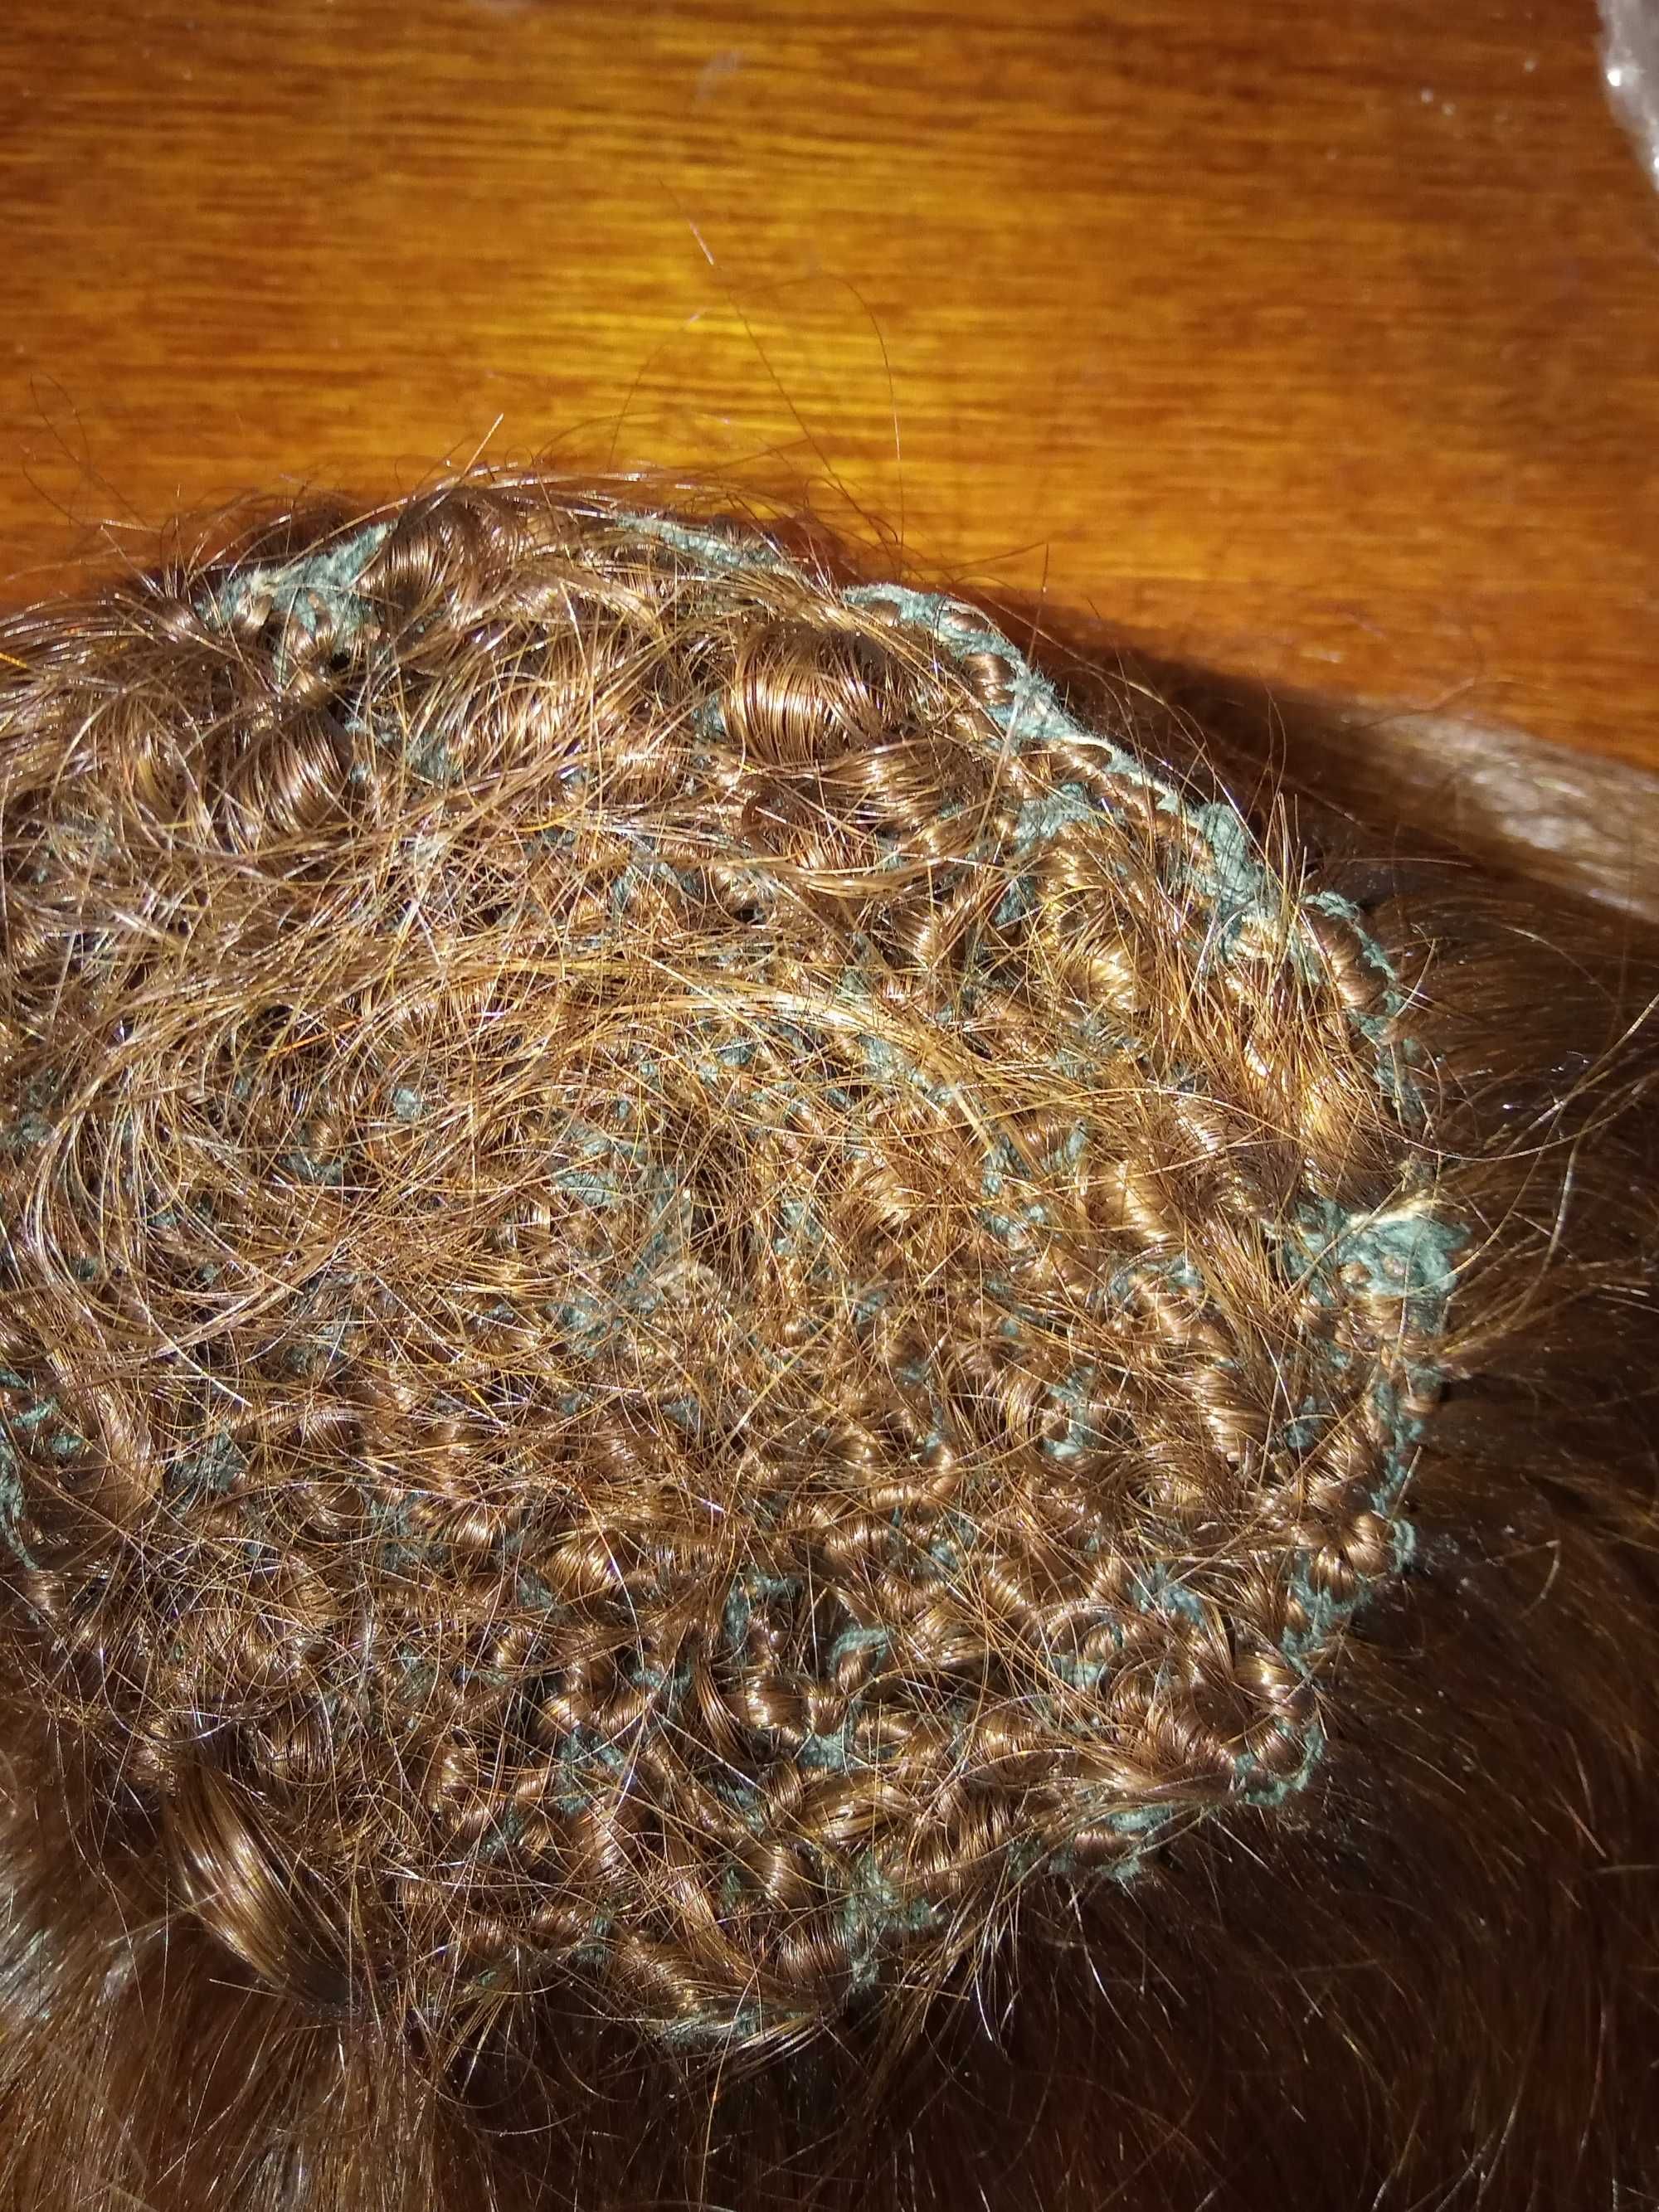 Шиньон из натуральных волос короткий и парик карэ